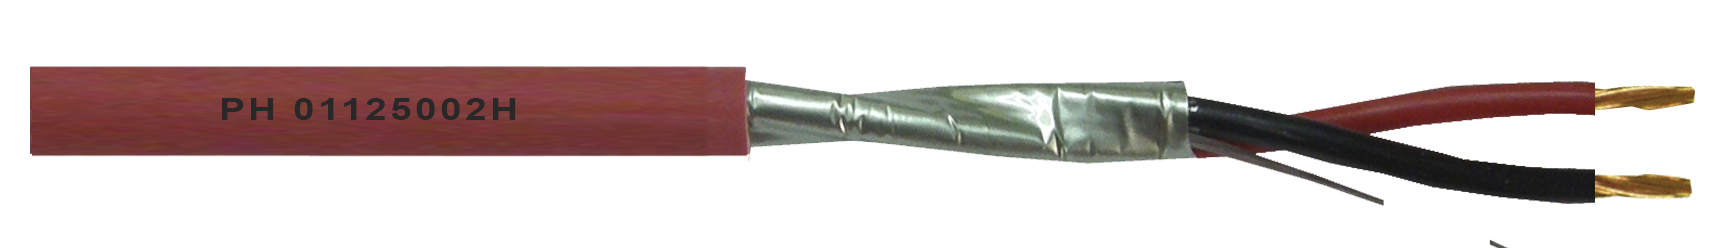 2 x 2,5 apantallado aluminio (AS) (FRLSLH)  - Rojo